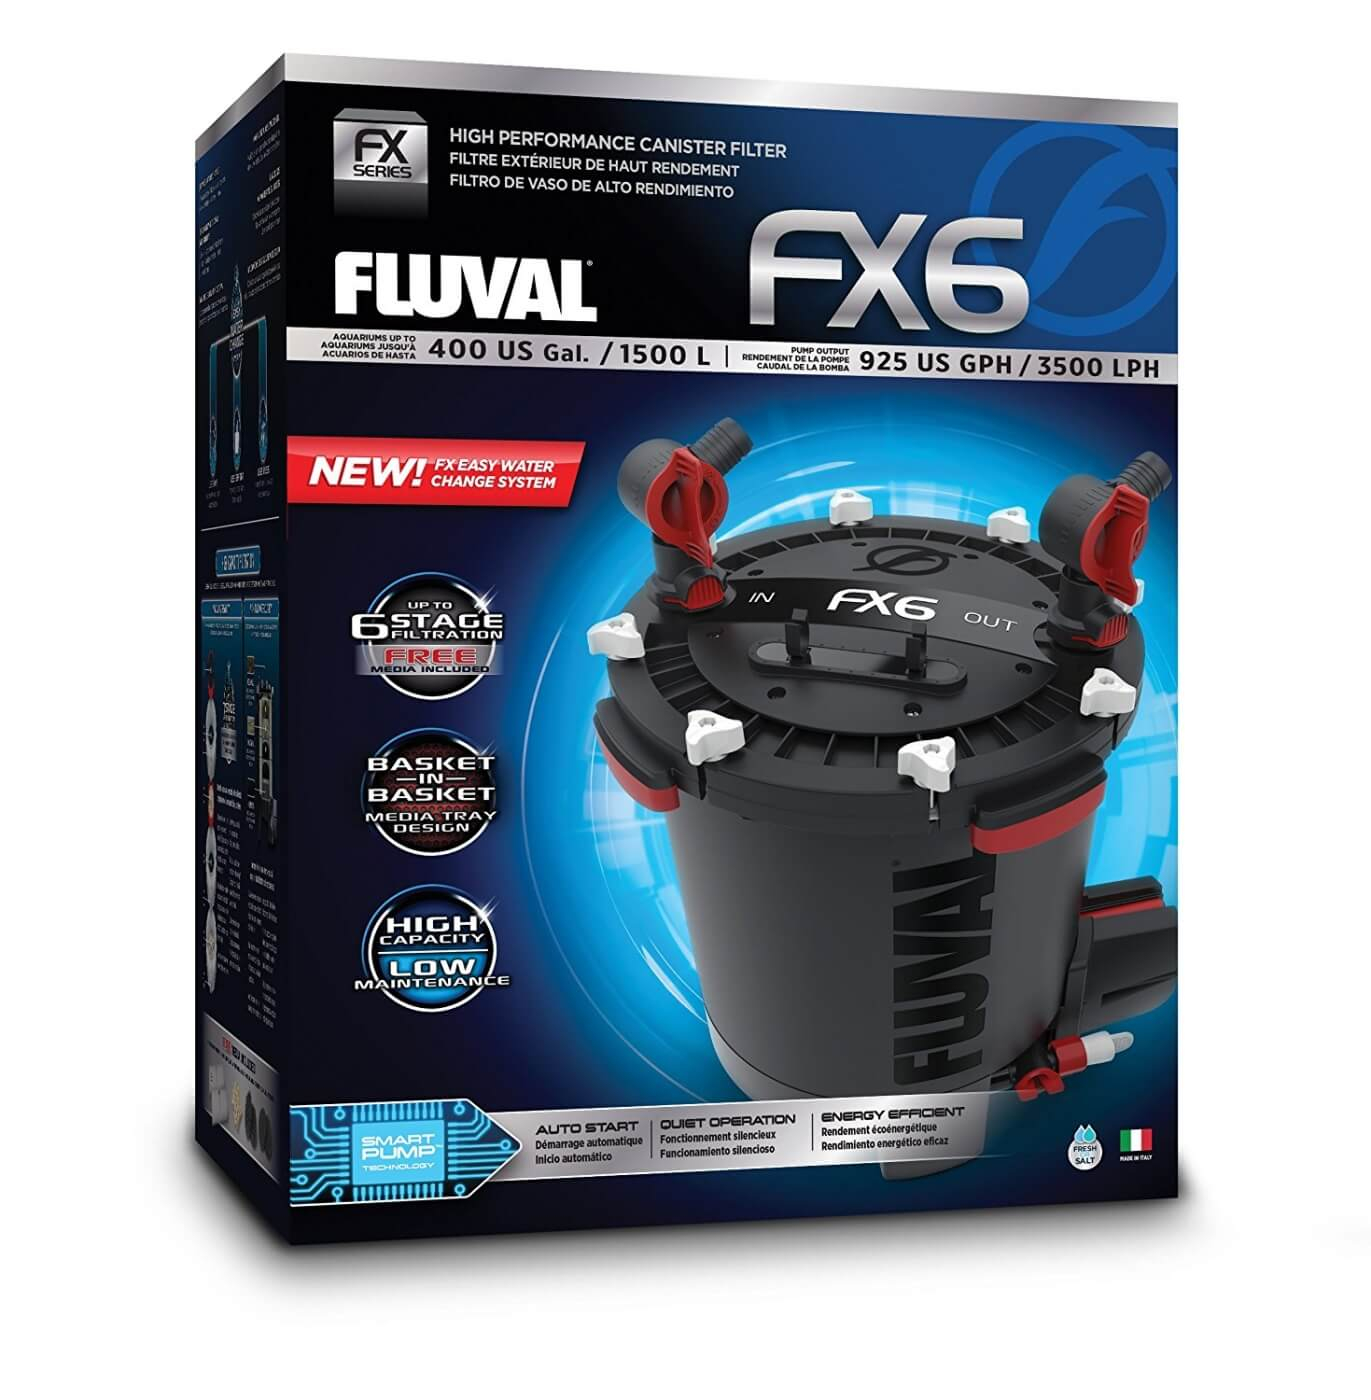 Filtro esterno FX6 Fluval fino a 1500 L